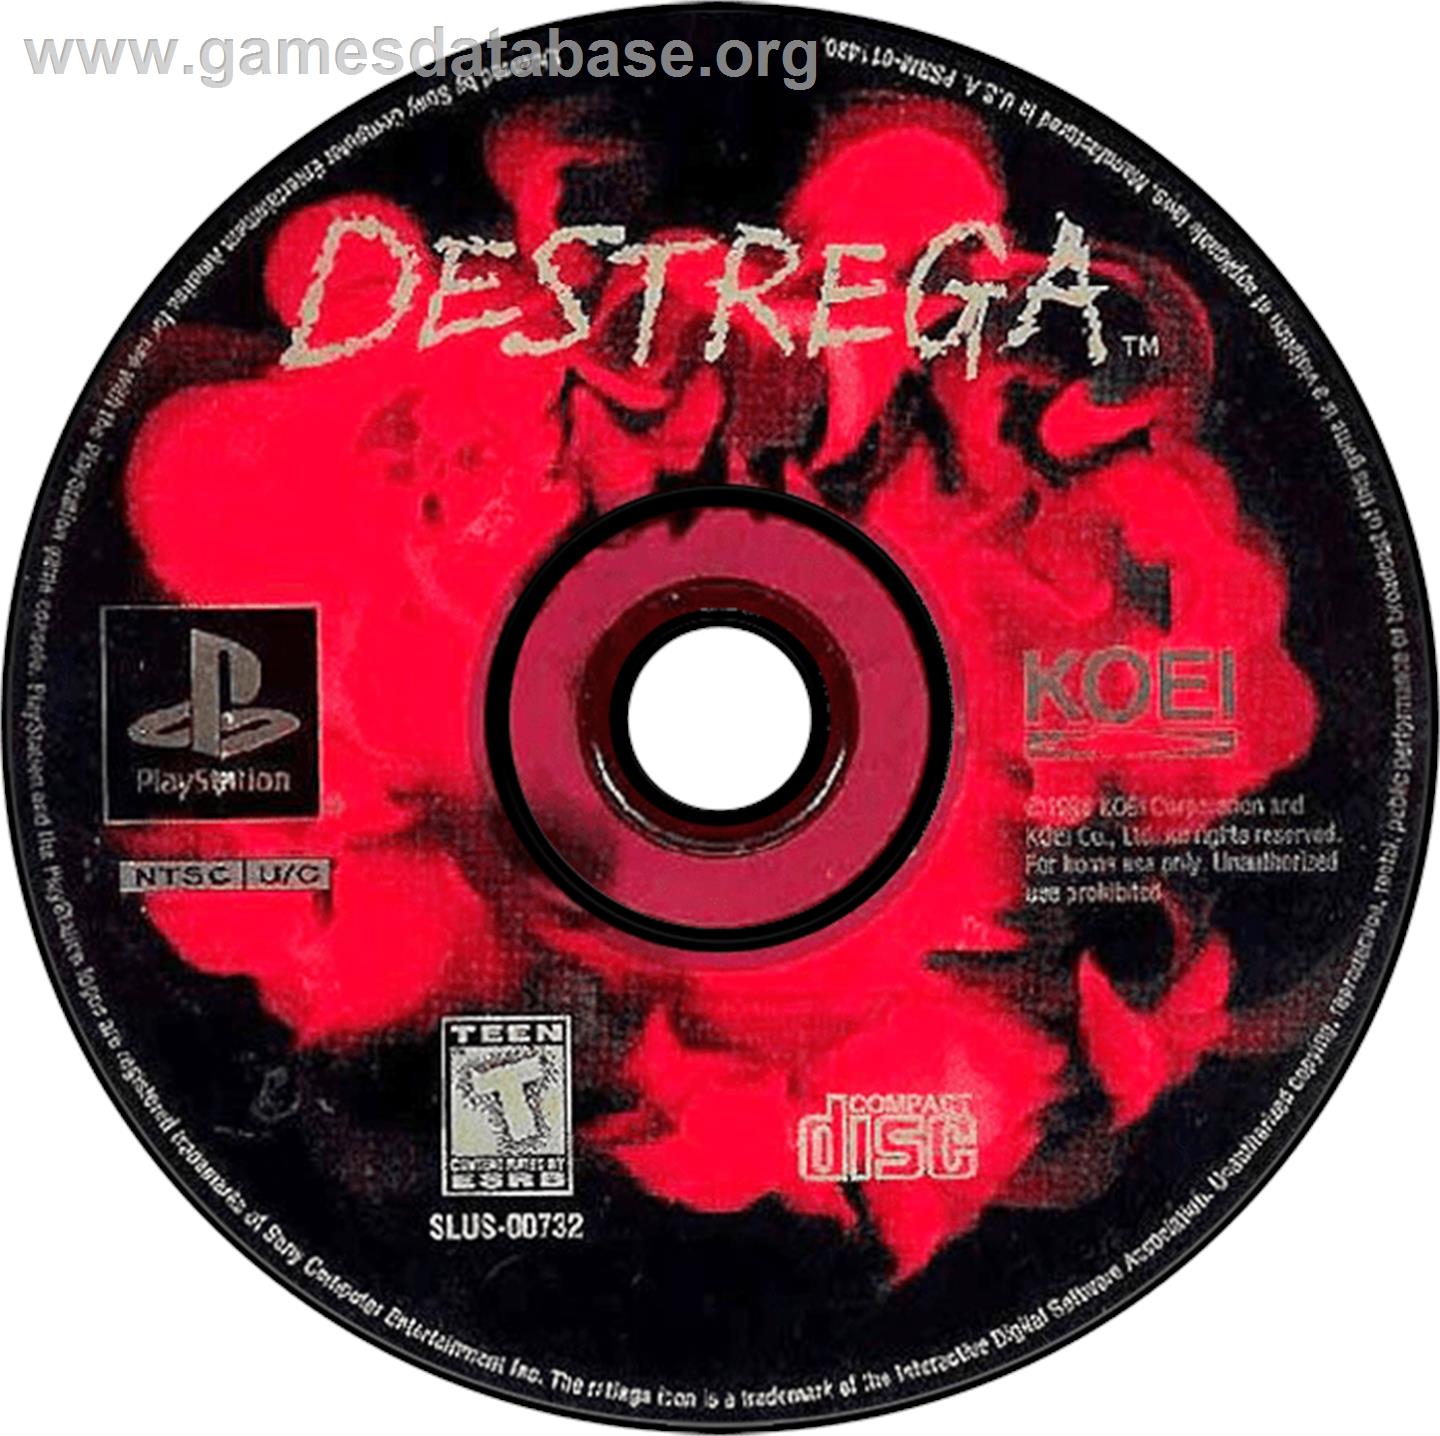 Destrega - Sony Playstation - Artwork - Disc